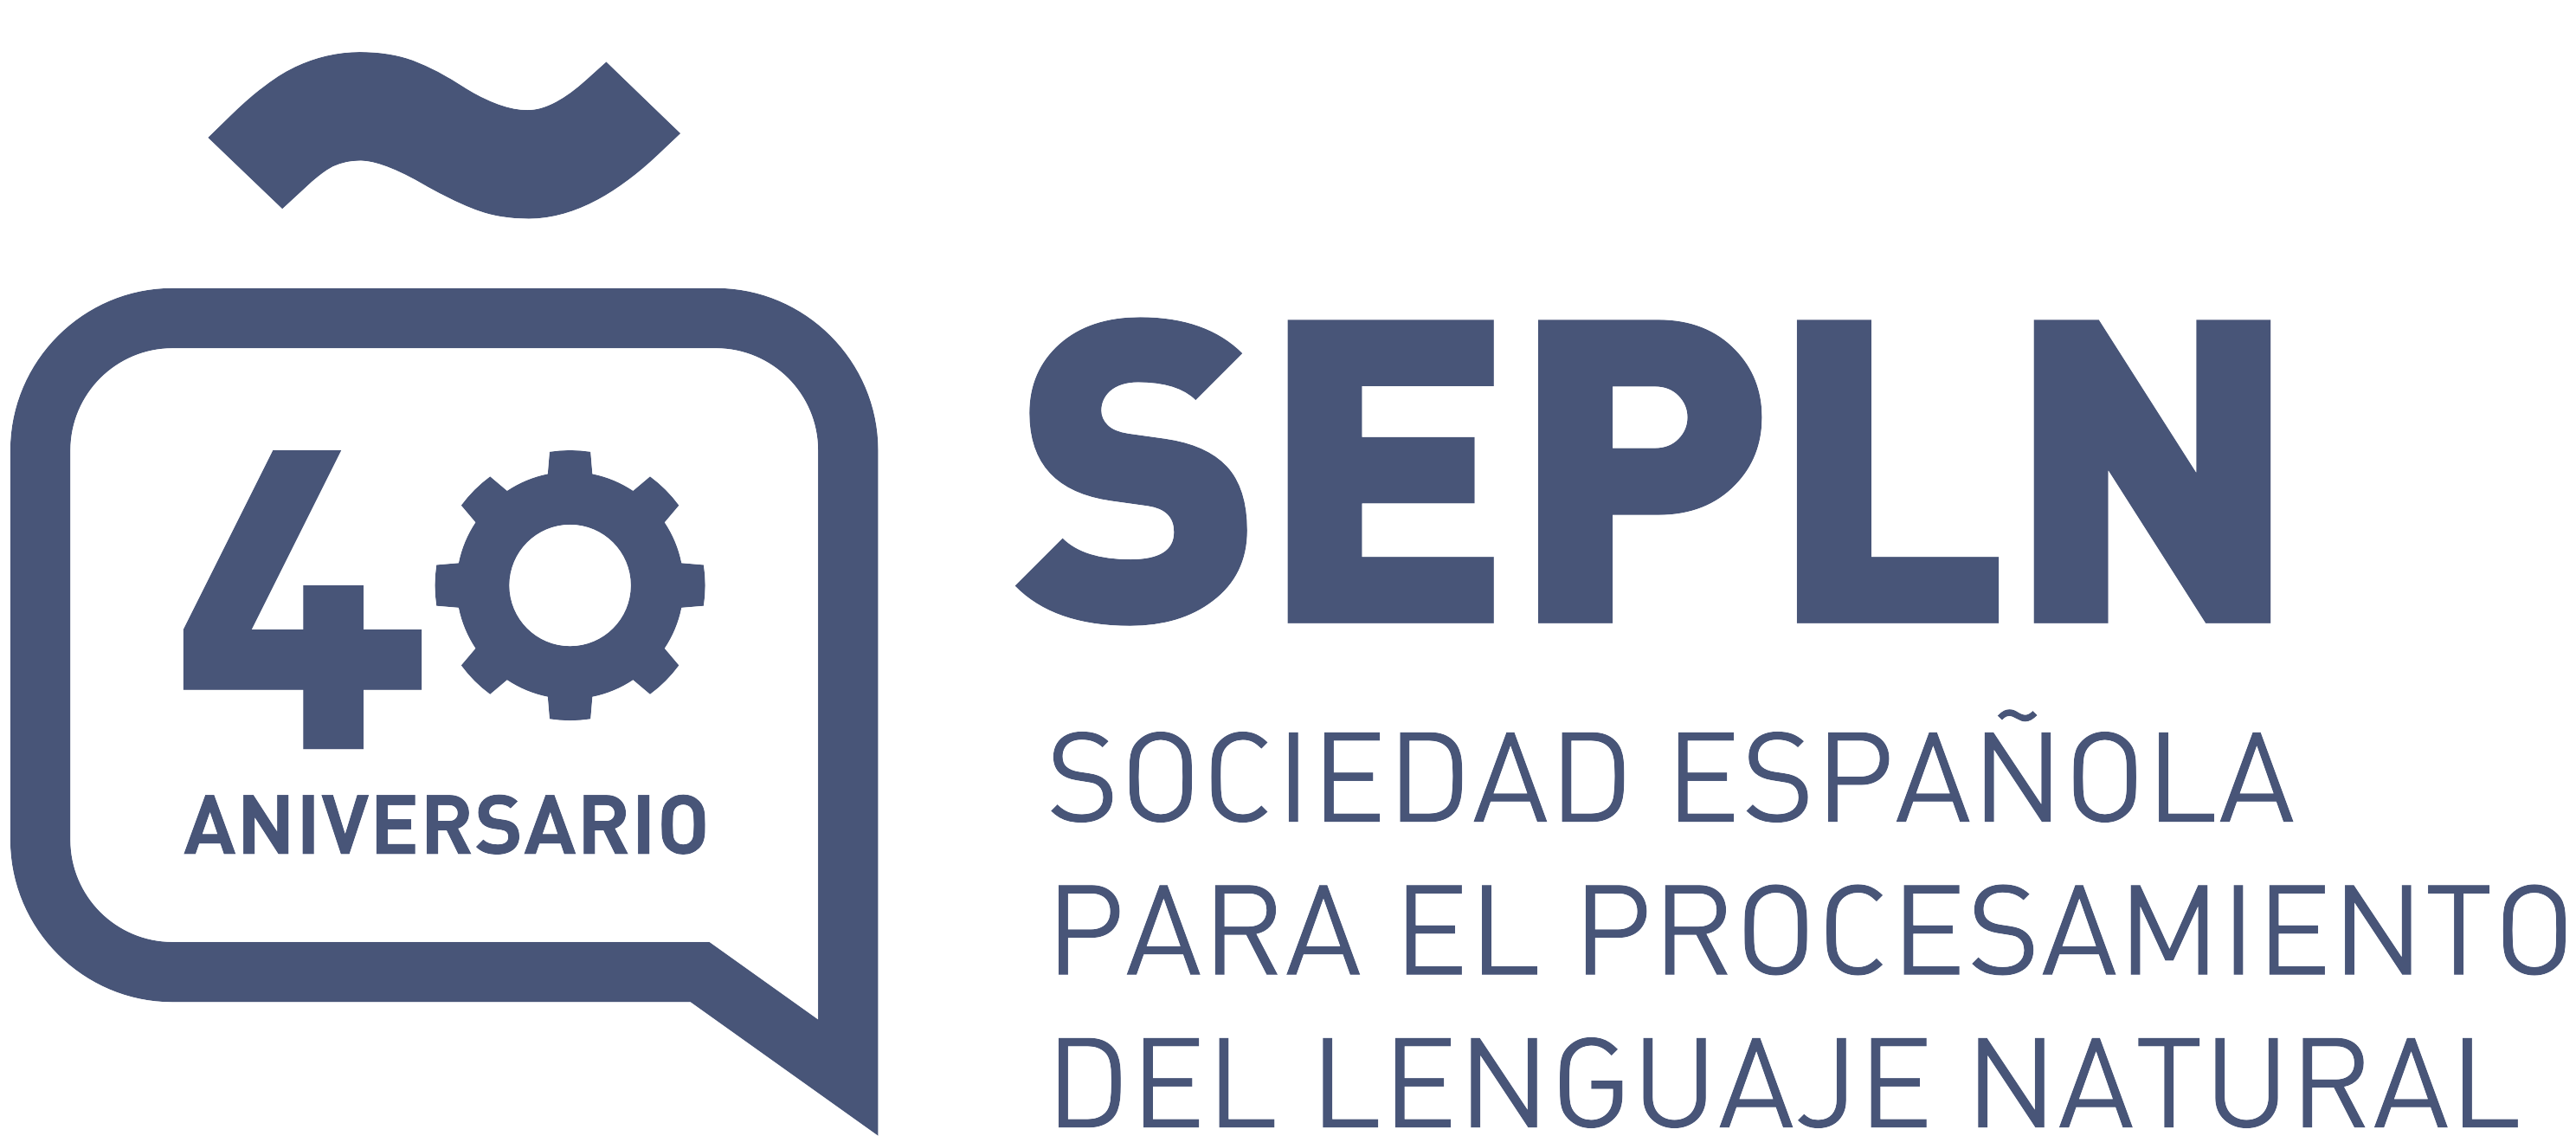 Sociedad Española para el Procesamiento del Lenguaje Natural